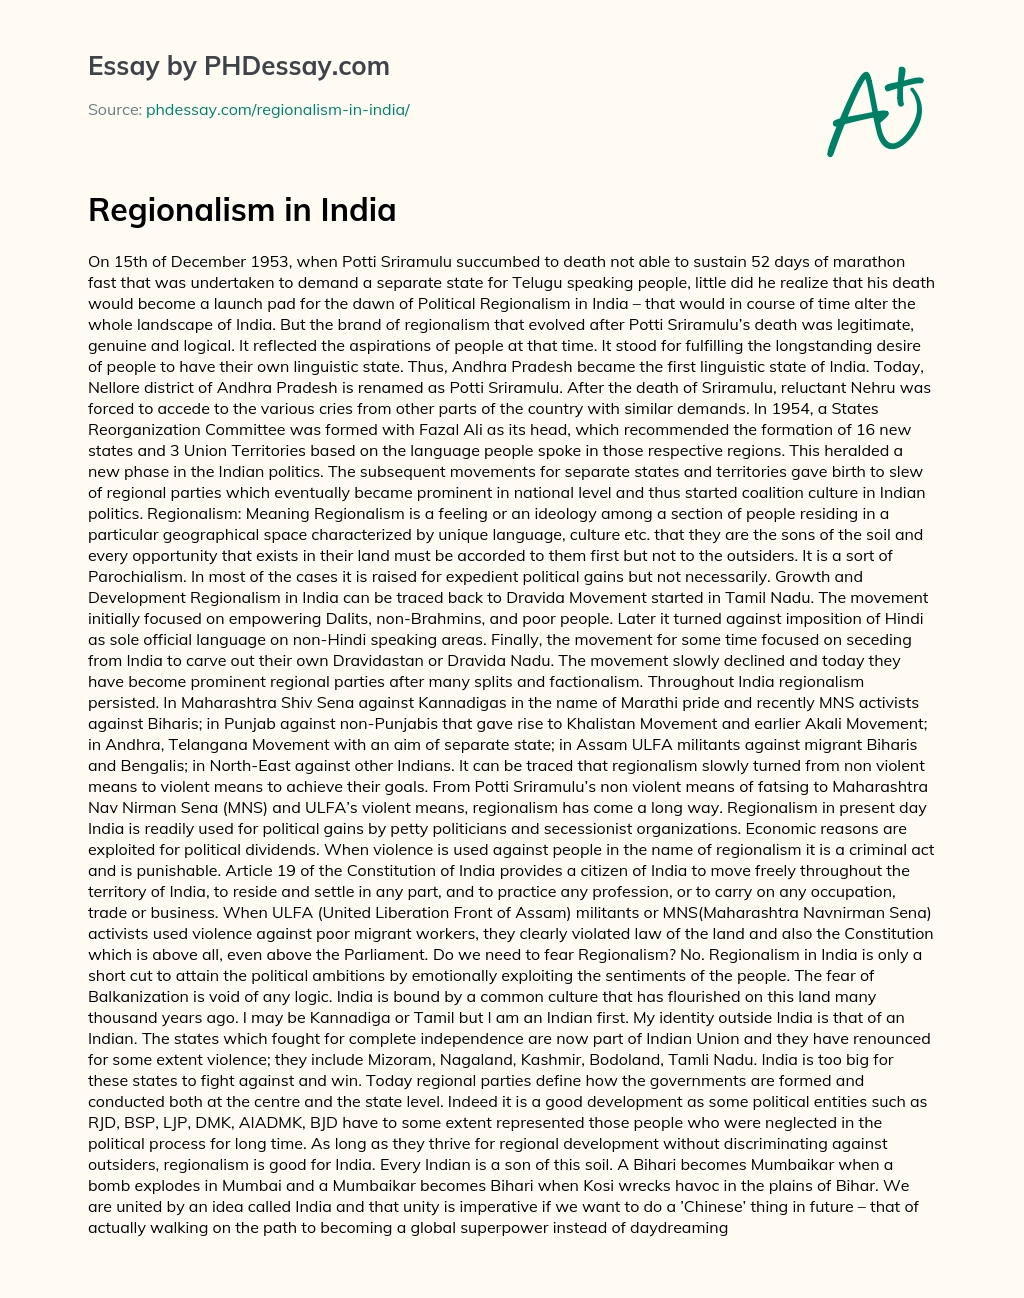 Regionalism in India essay